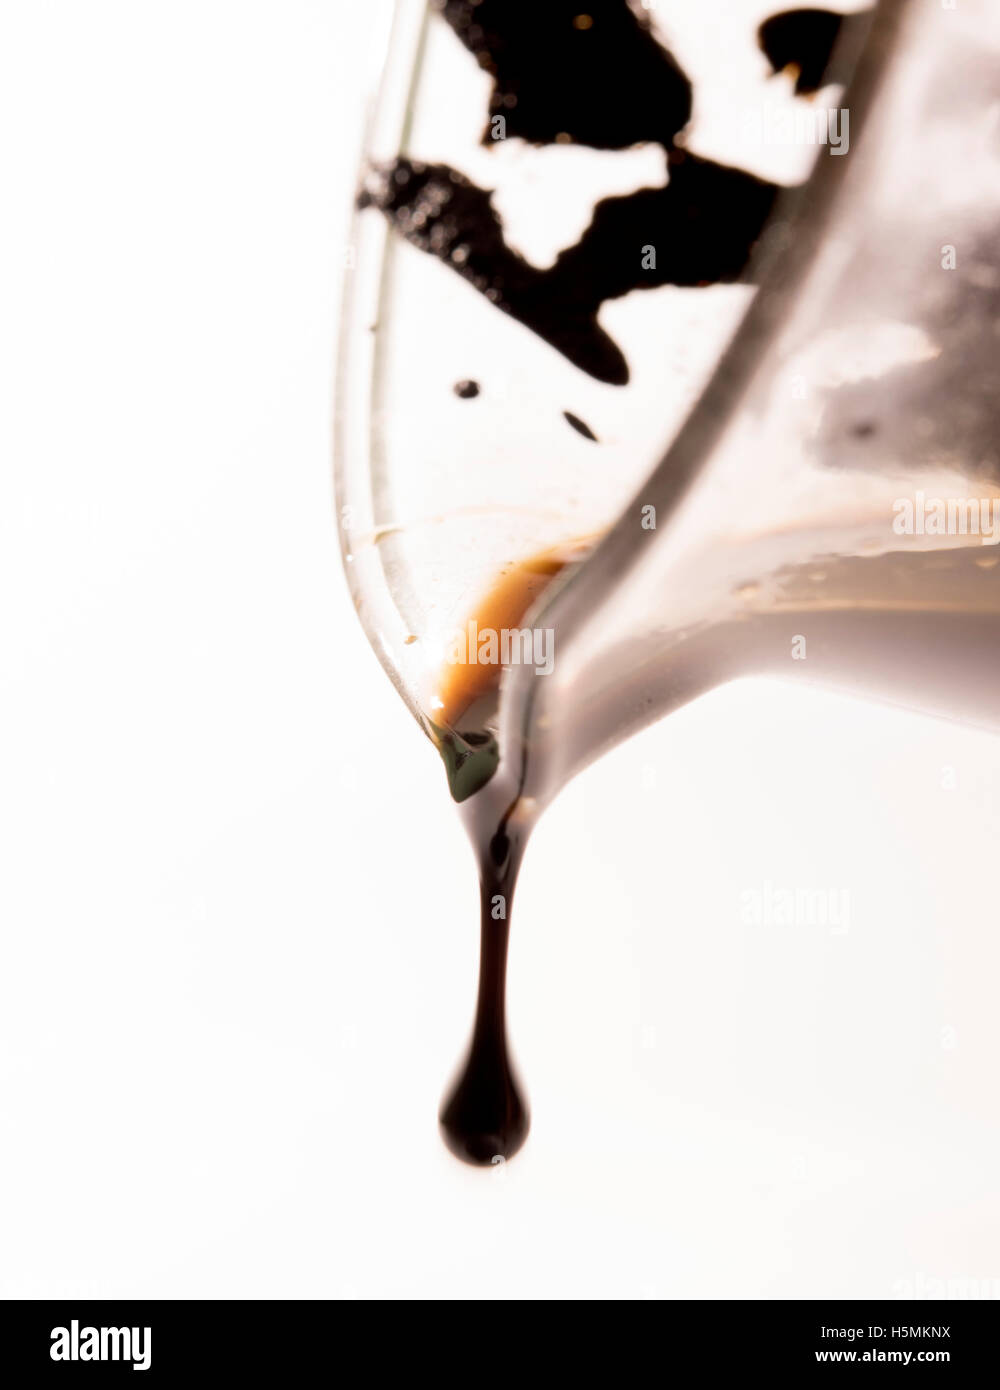 La fuoriuscita di olio di petrolio dal bicchiere Foto Stock